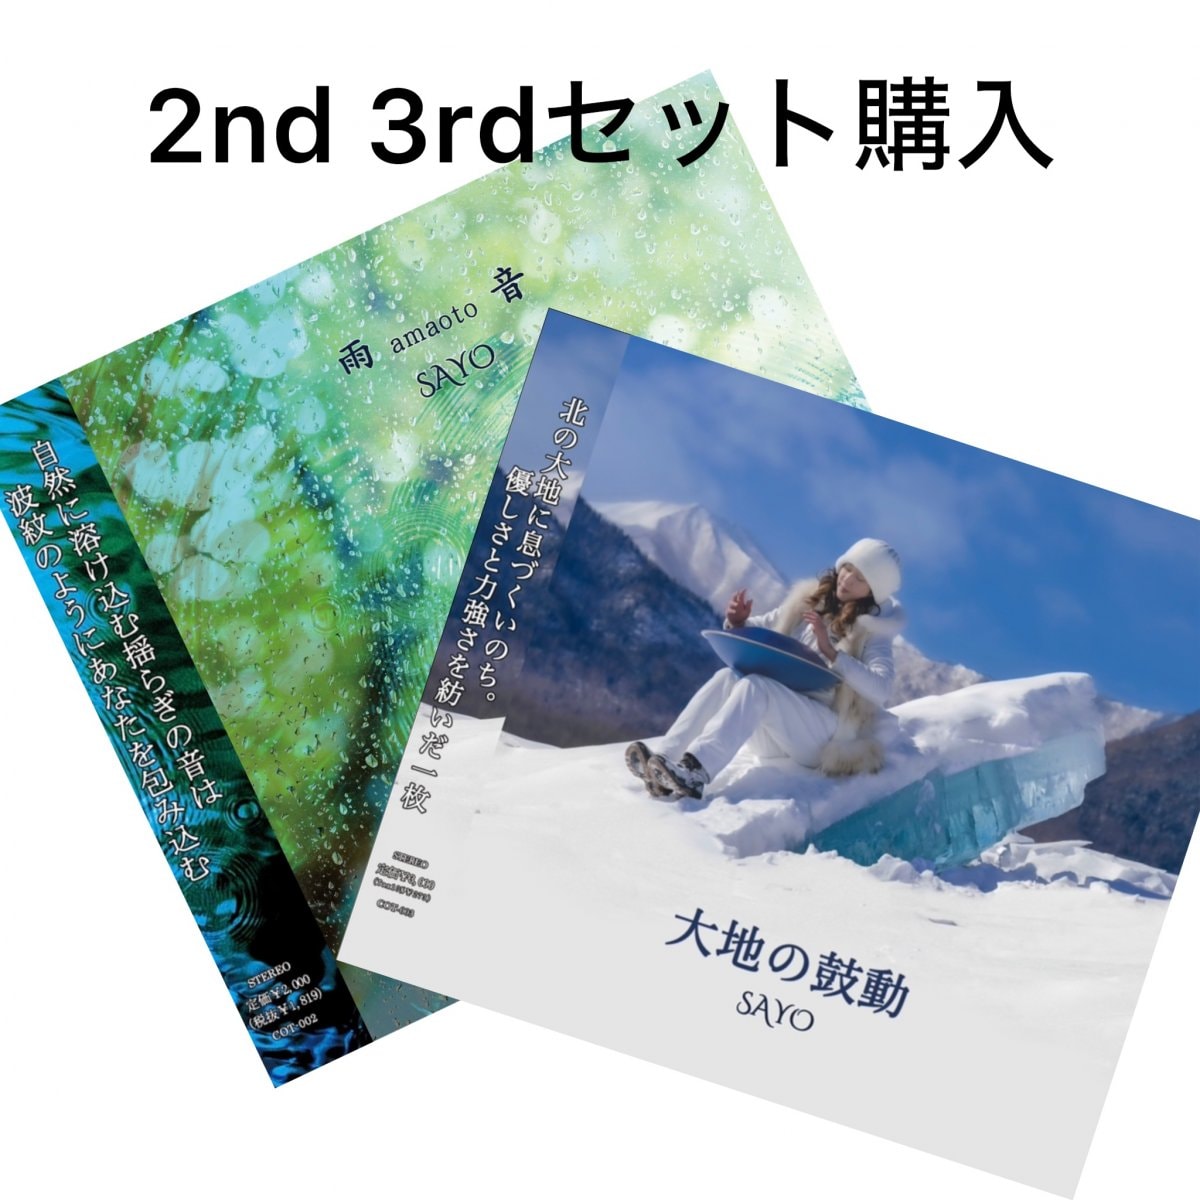 【2枚同時購入 】2nd Album「雨音」3rd Album「大地の鼓動」